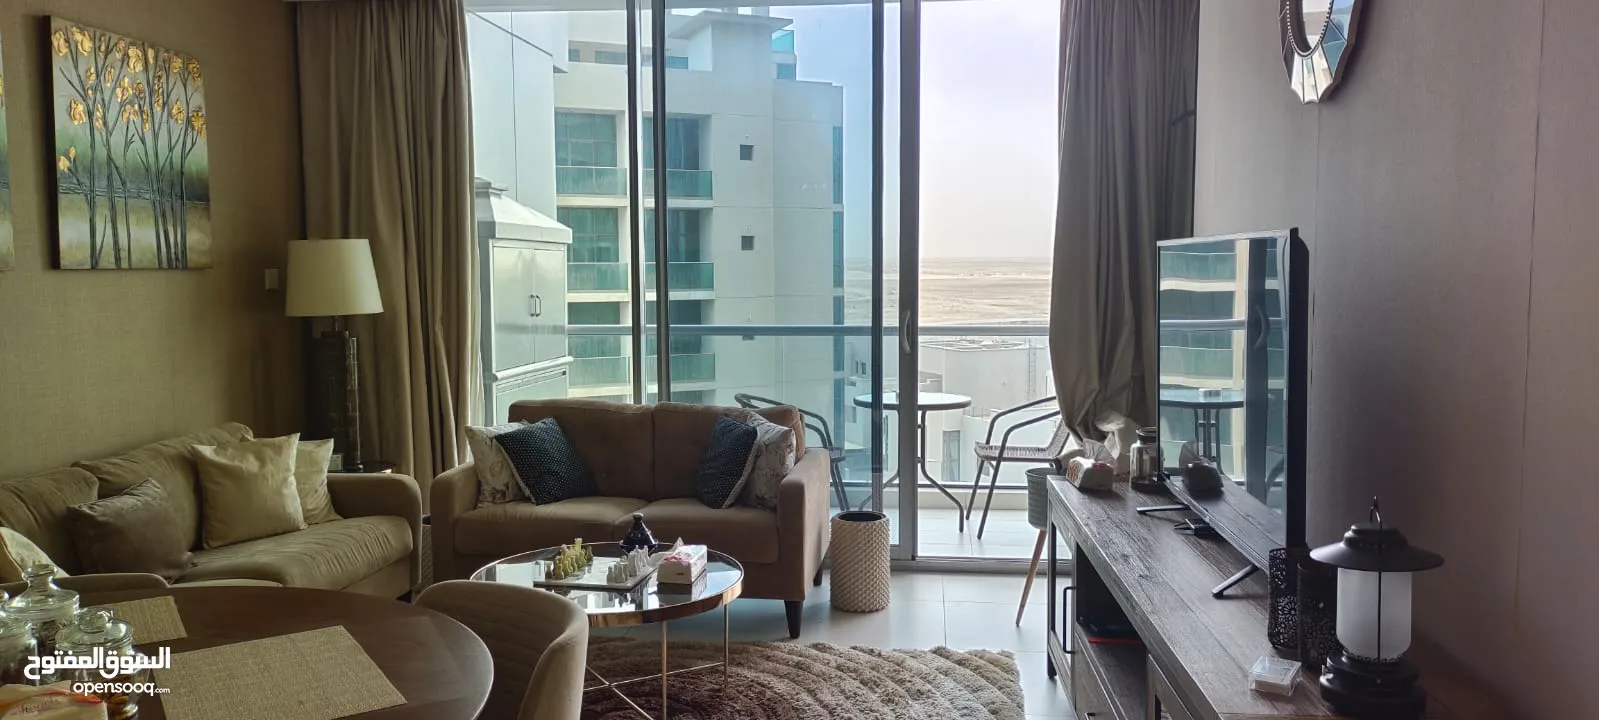 شقه فندقيه مفروشة بالكامل في دره مارينا البحرين